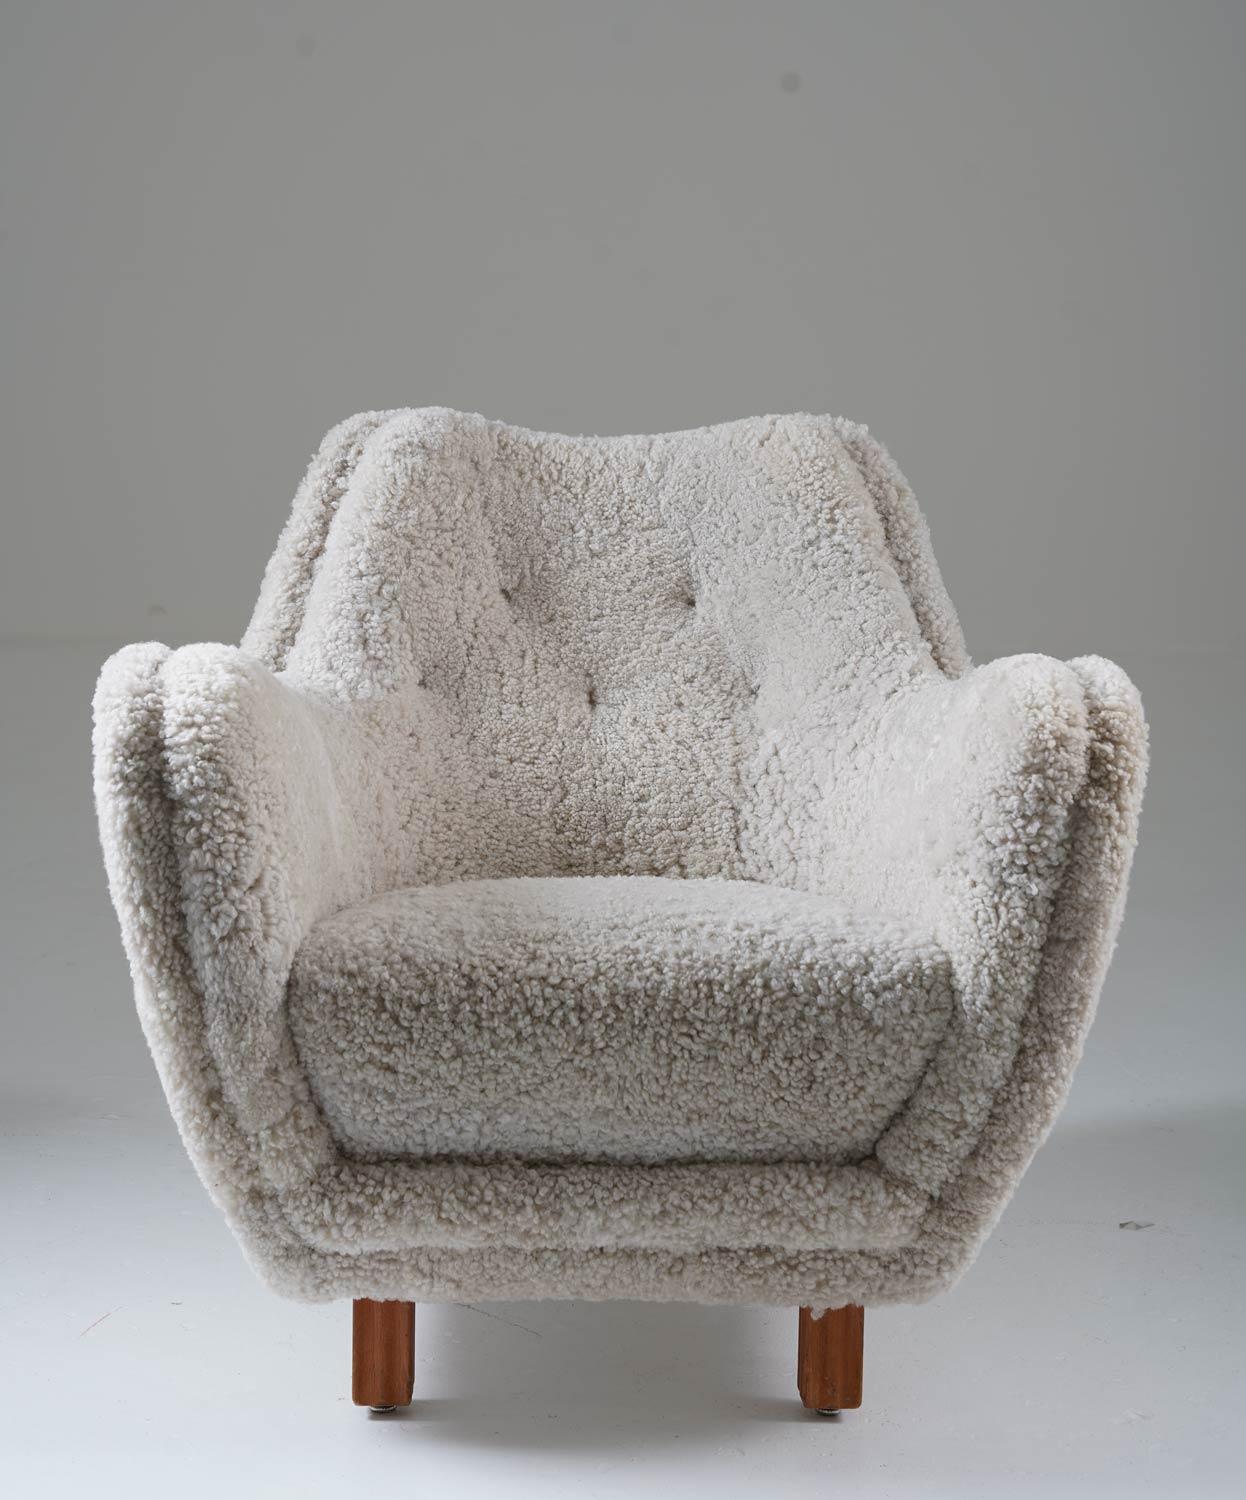 20th Century Sheepskin Modern Lounge chairs by Sten Wicéns Möbelfabrik 1950s, Sweden